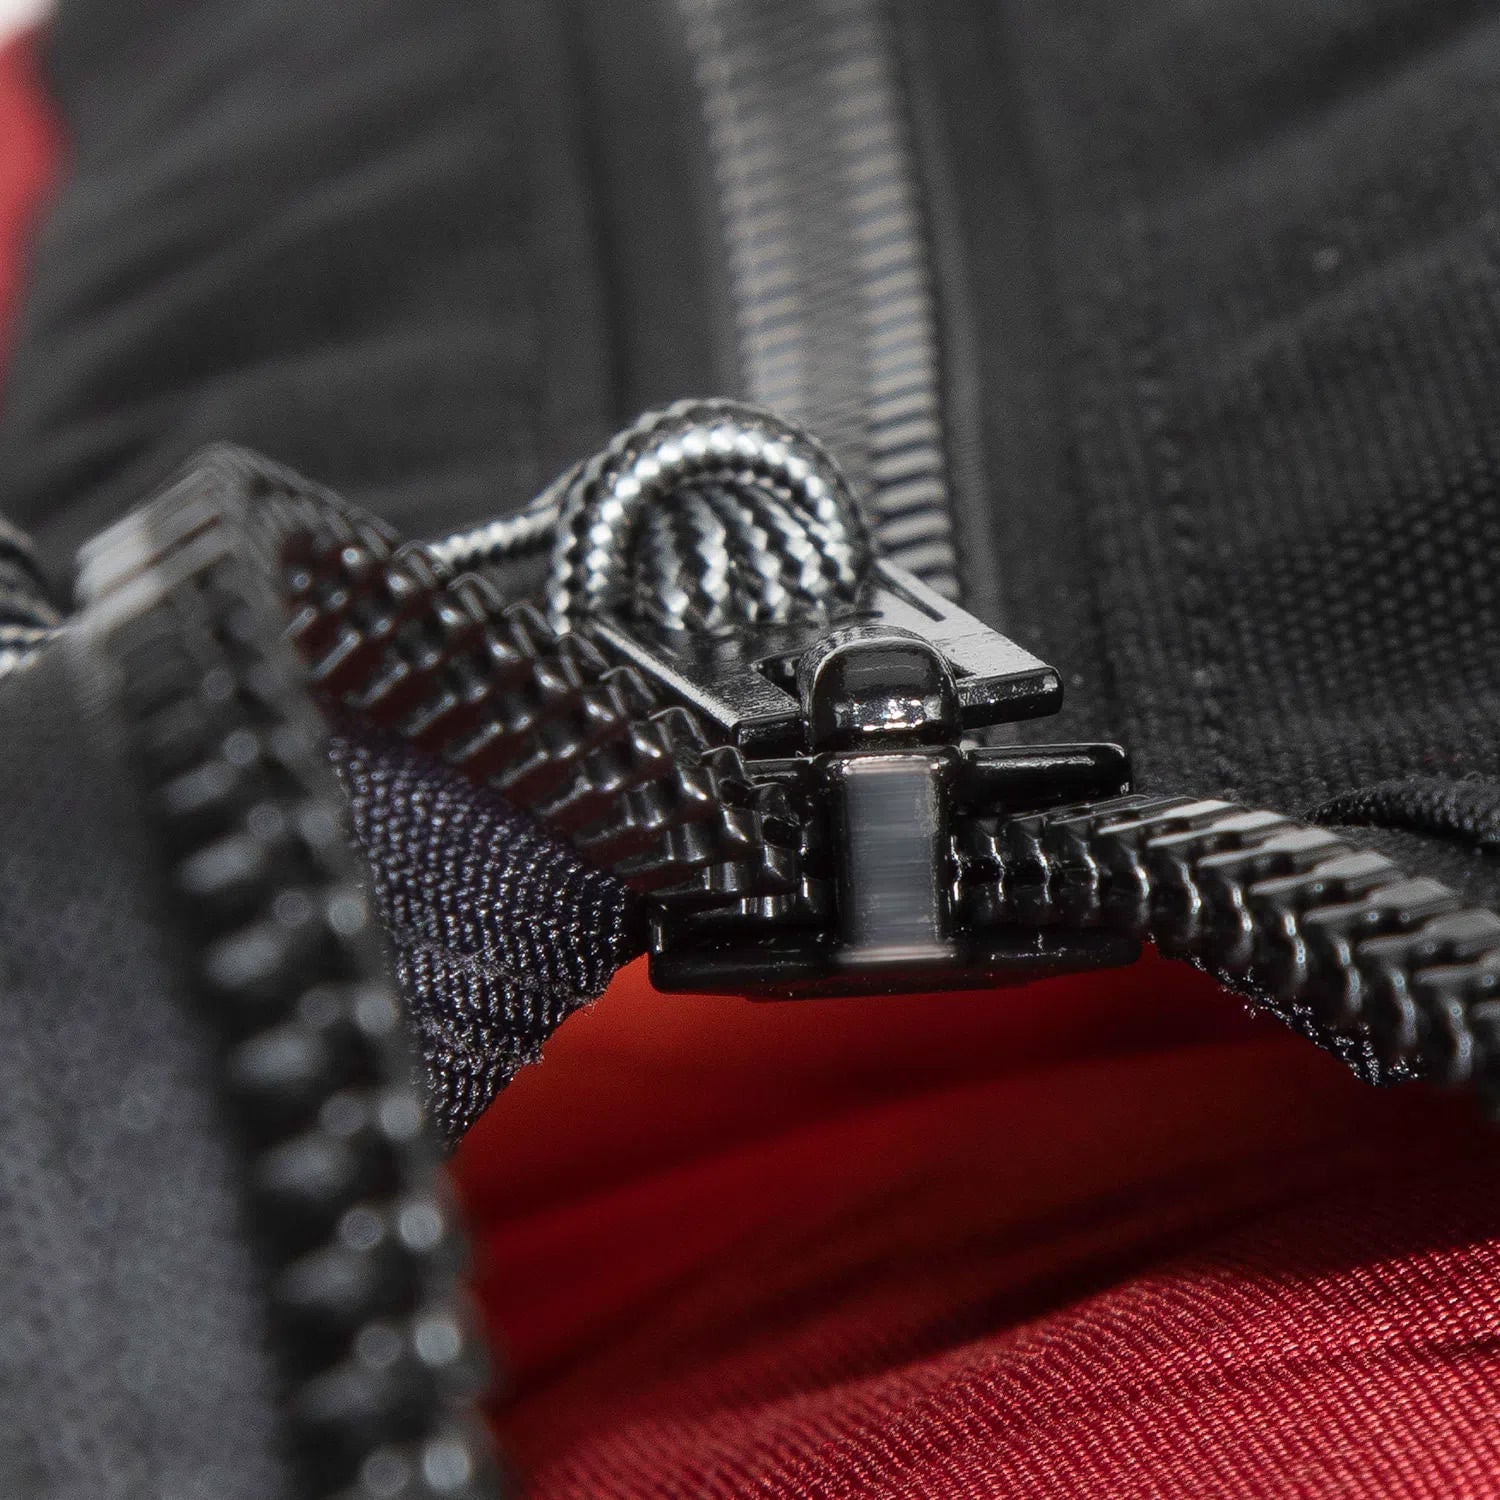 #10 YKK zipper close up.